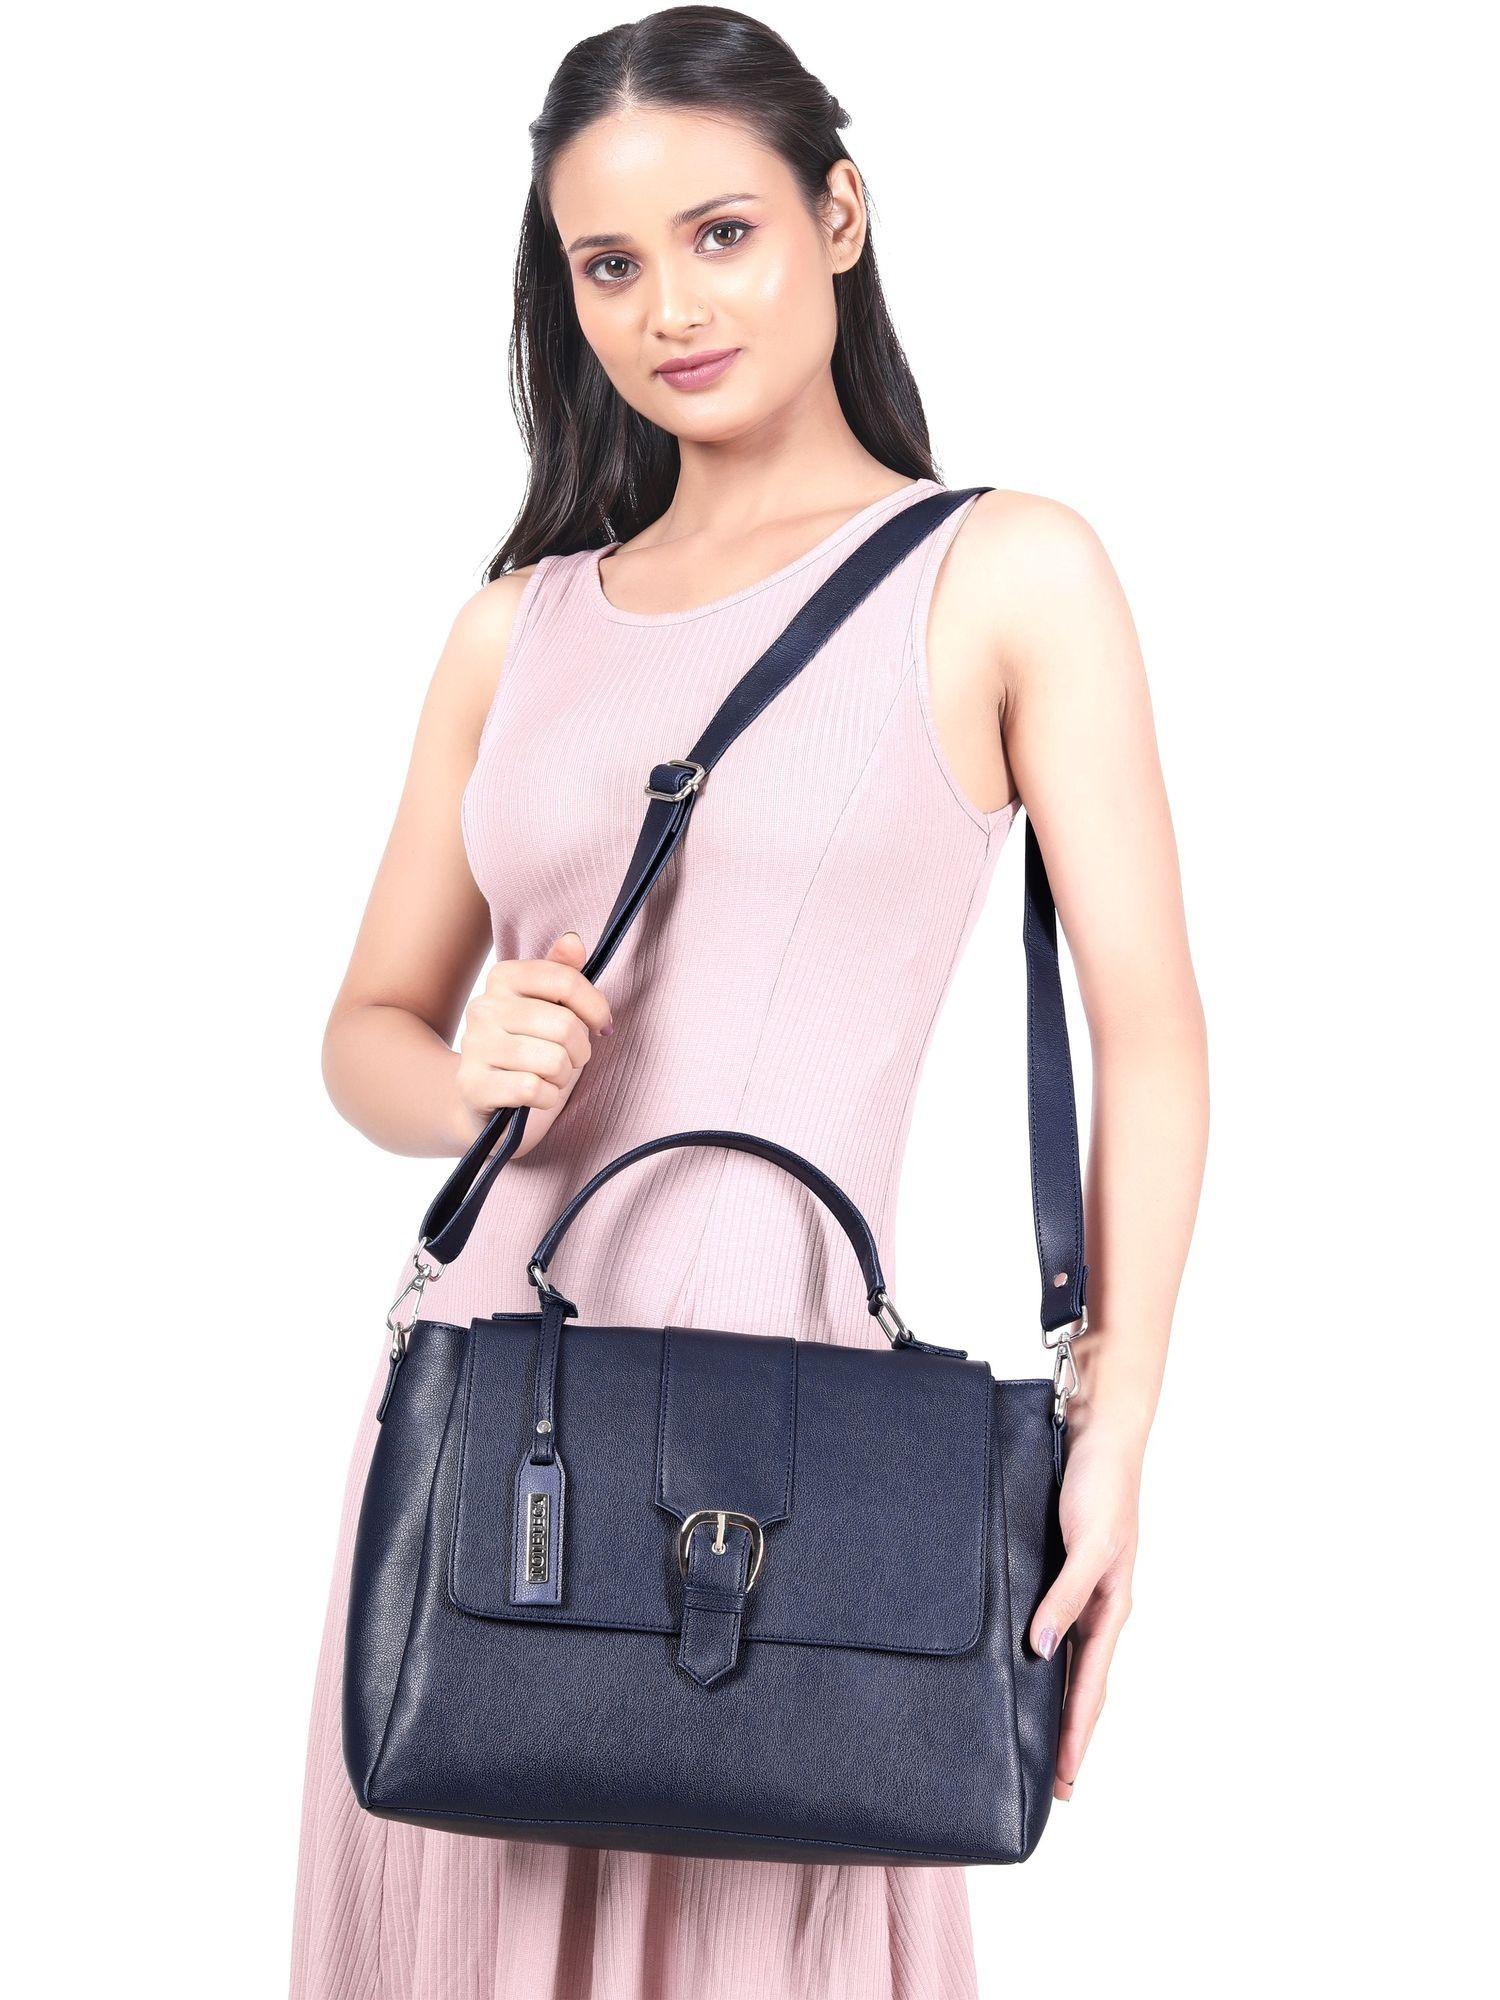 tri color handbag-navy blue